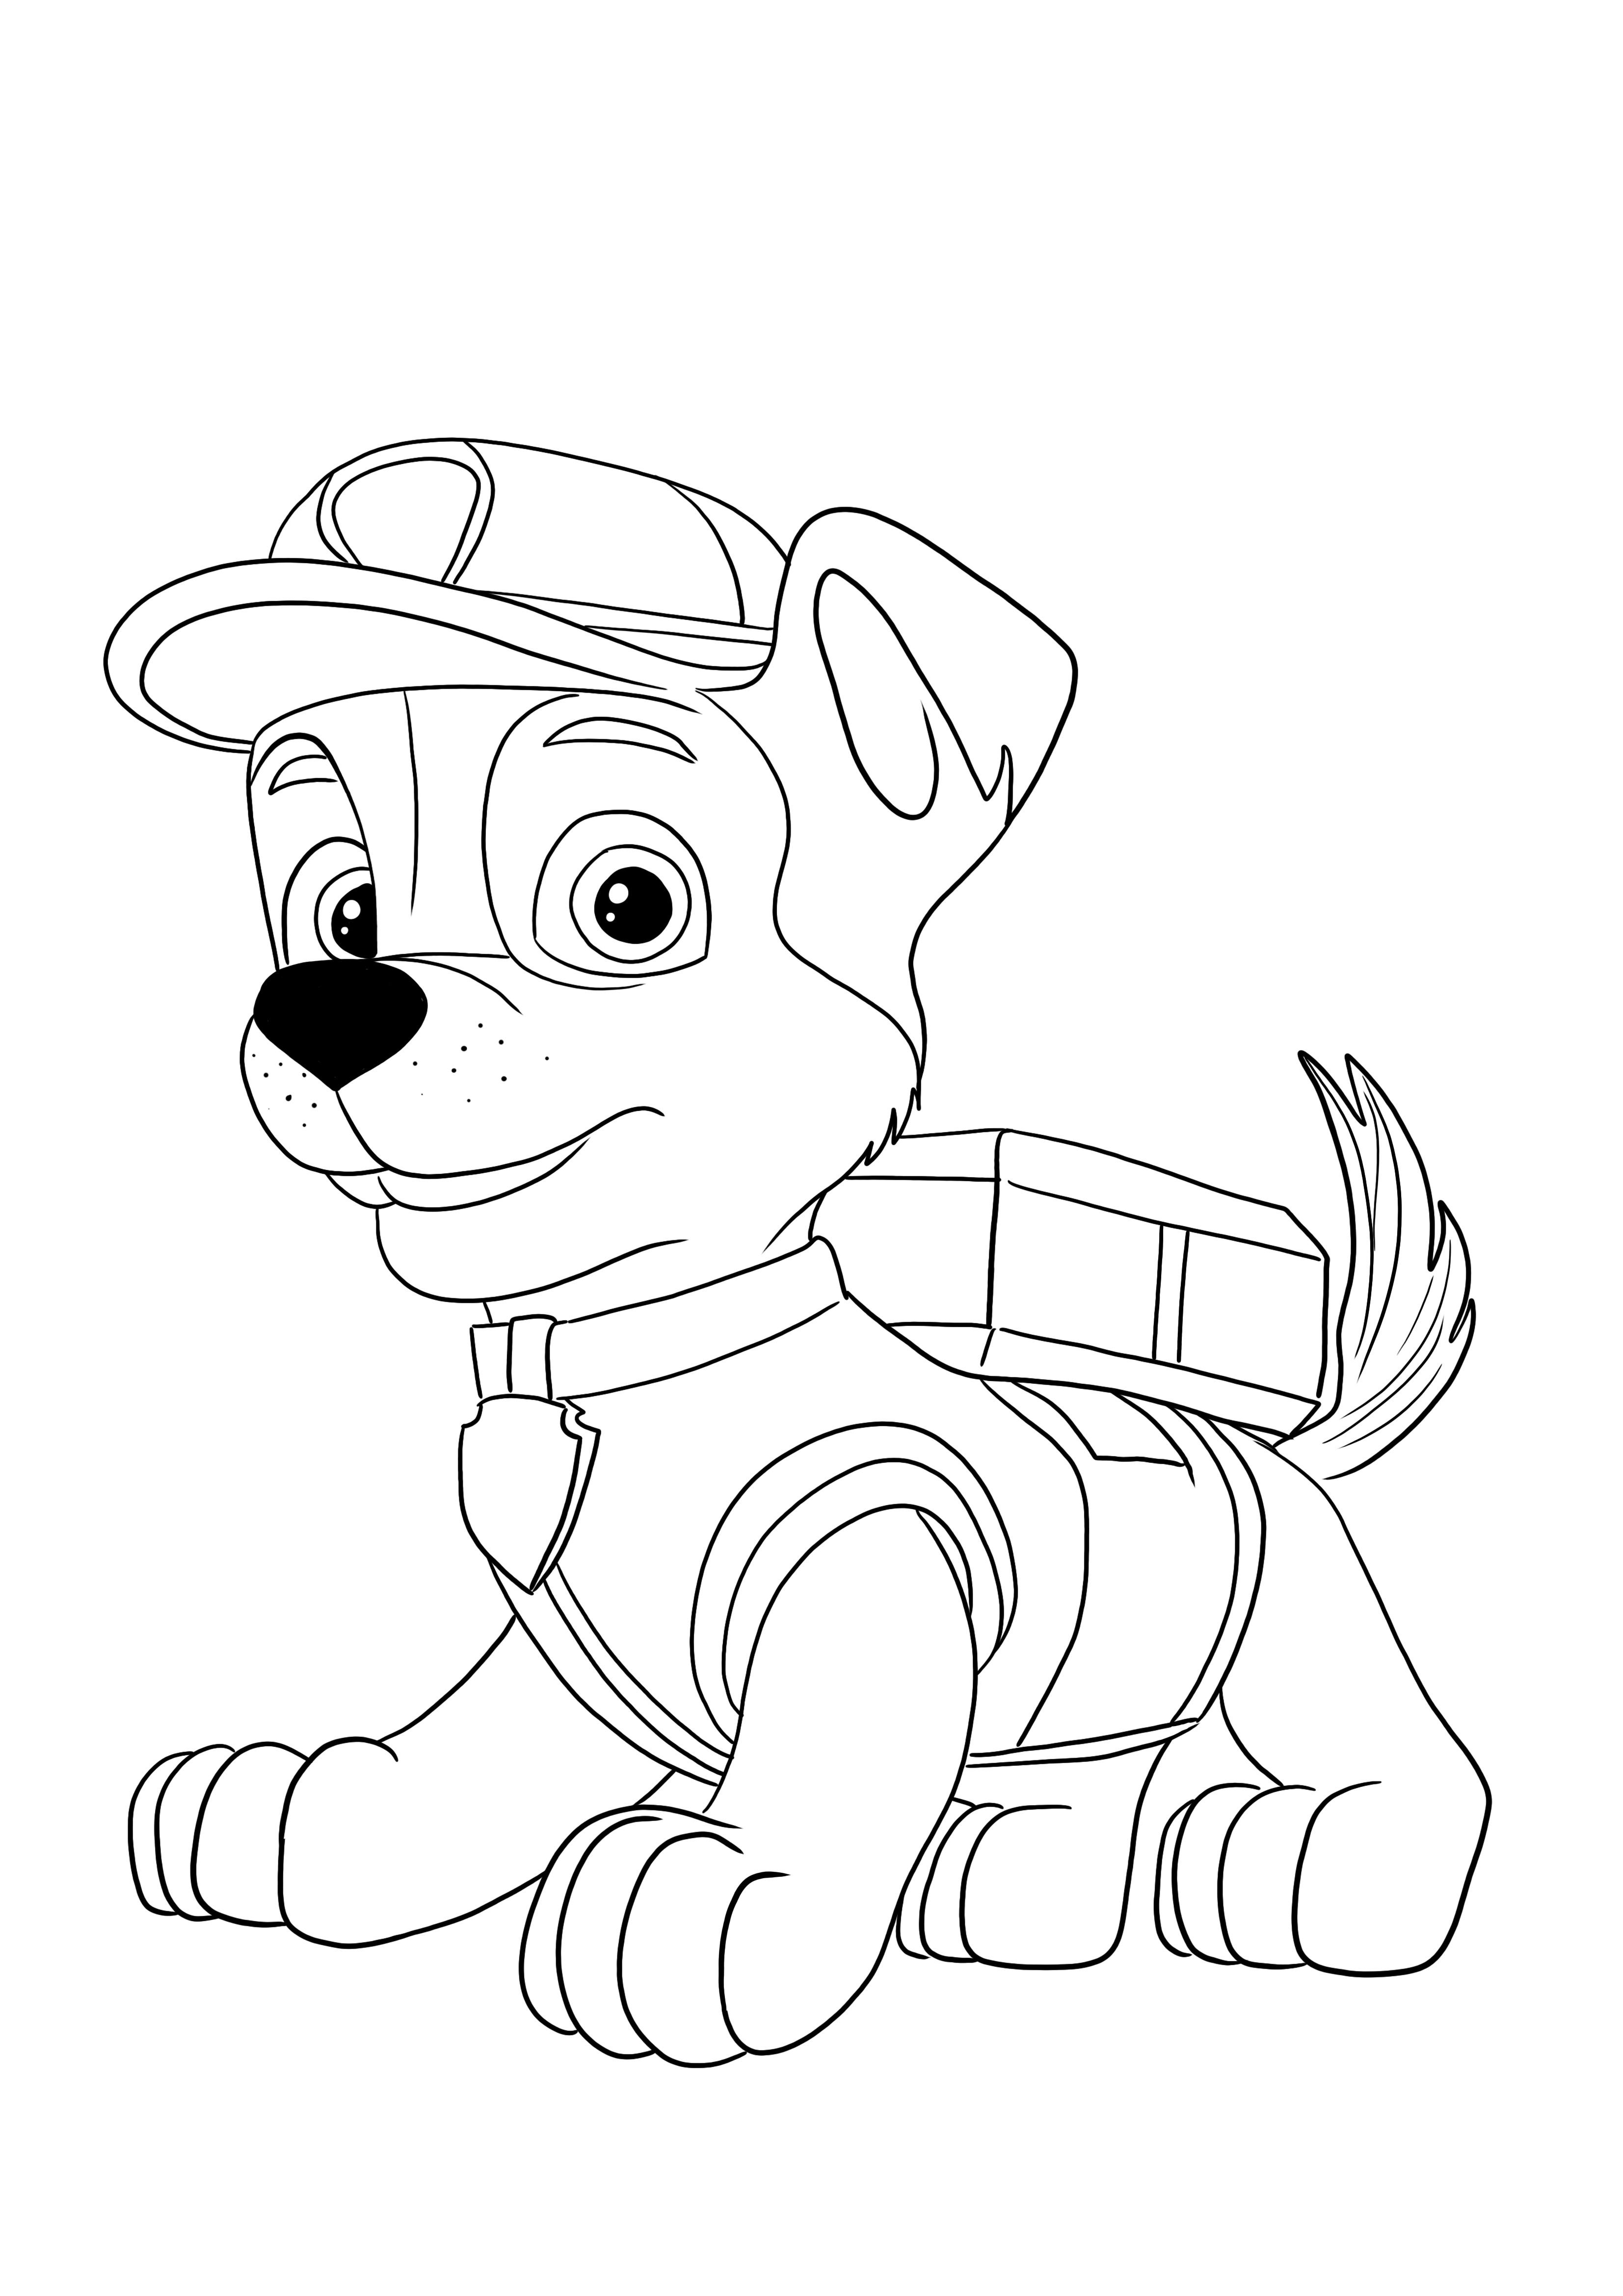 Image Rocky de Paw Patrol à imprimer et colorier gratuitement pour les enfants